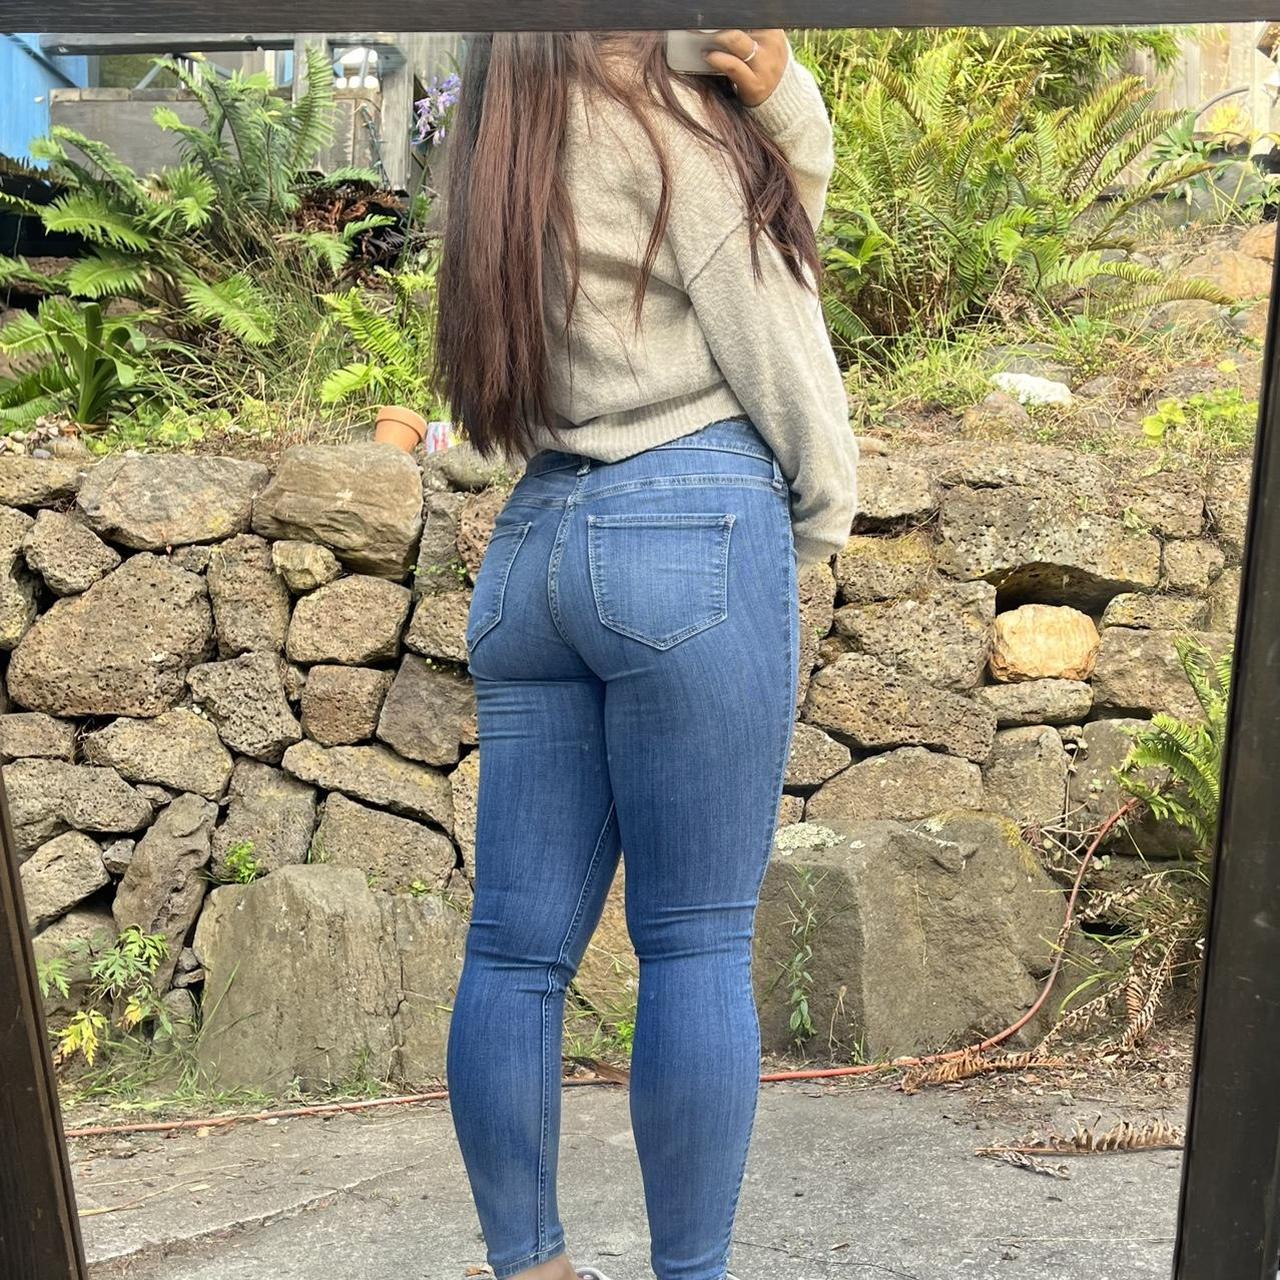 Hollister jeans 👖 size 3S/ waist 26 / length 26 👖 - Depop